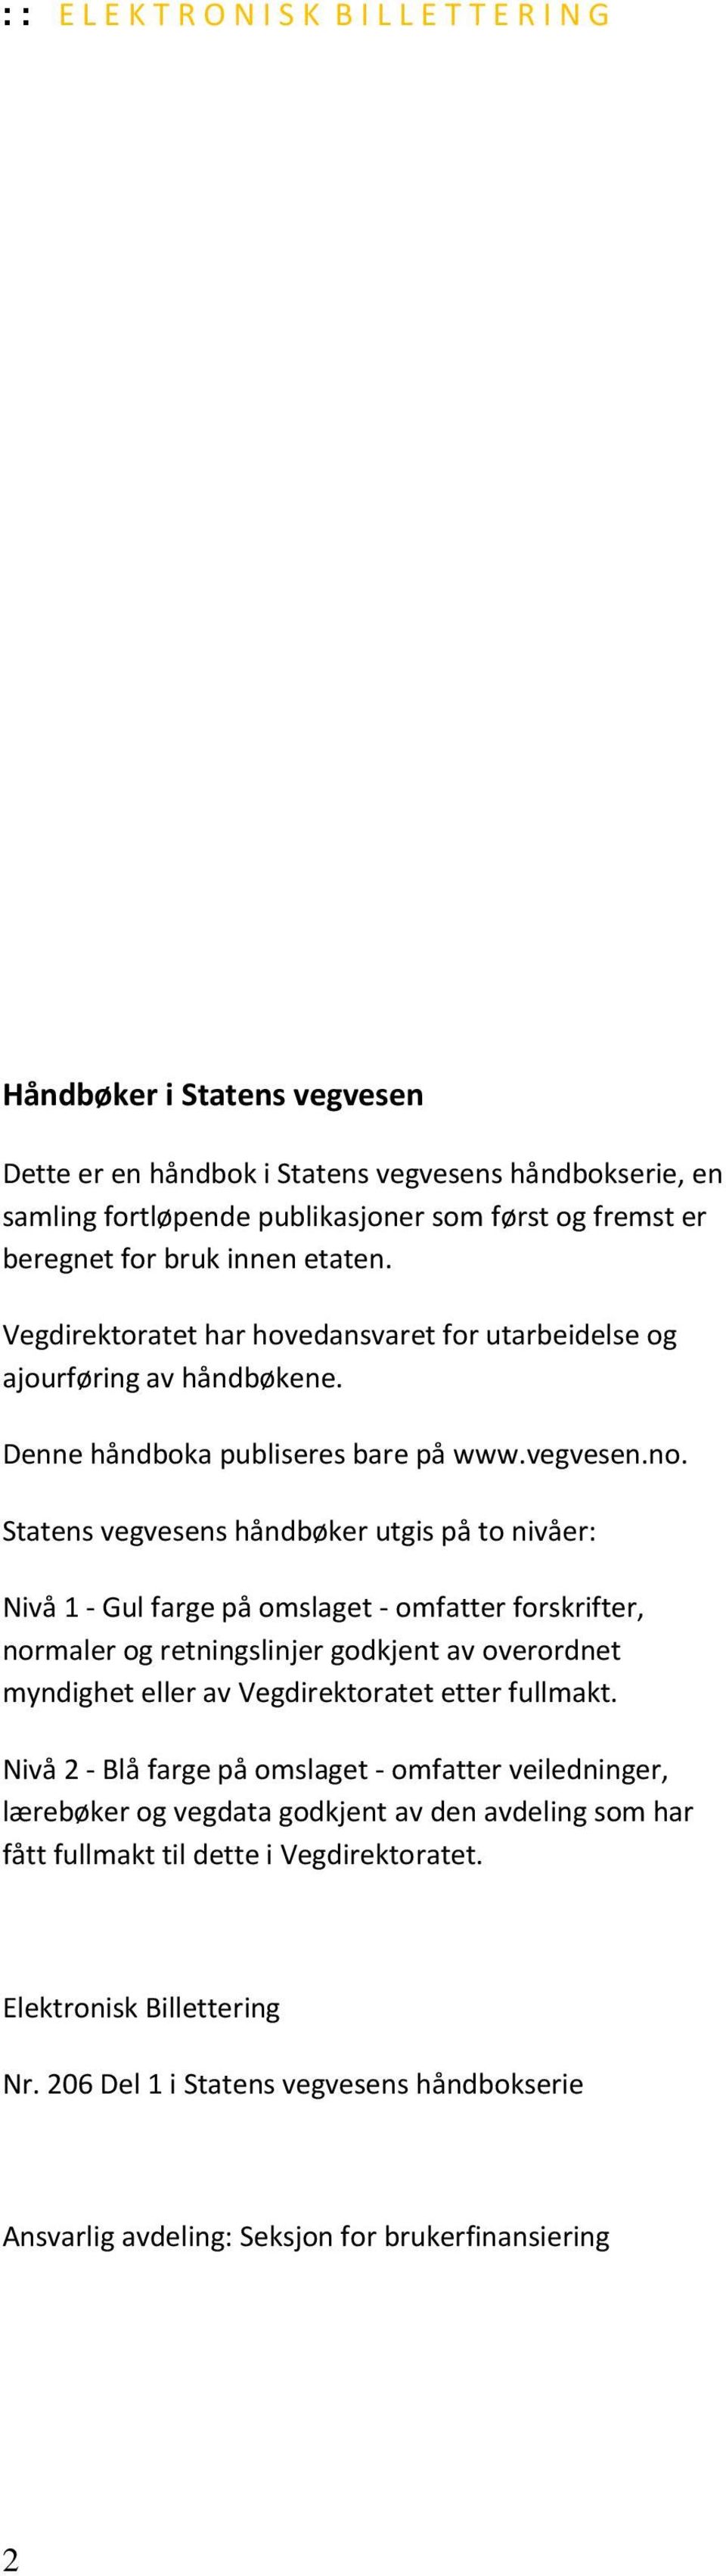 Statens vegvesens håndbøker utgis på to nivåer: Nivå 1 - Gul farge på omslaget - omfatter forskrifter, normaler og retningslinjer godkjent av overordnet myndighet eller av Vegdirektoratet etter